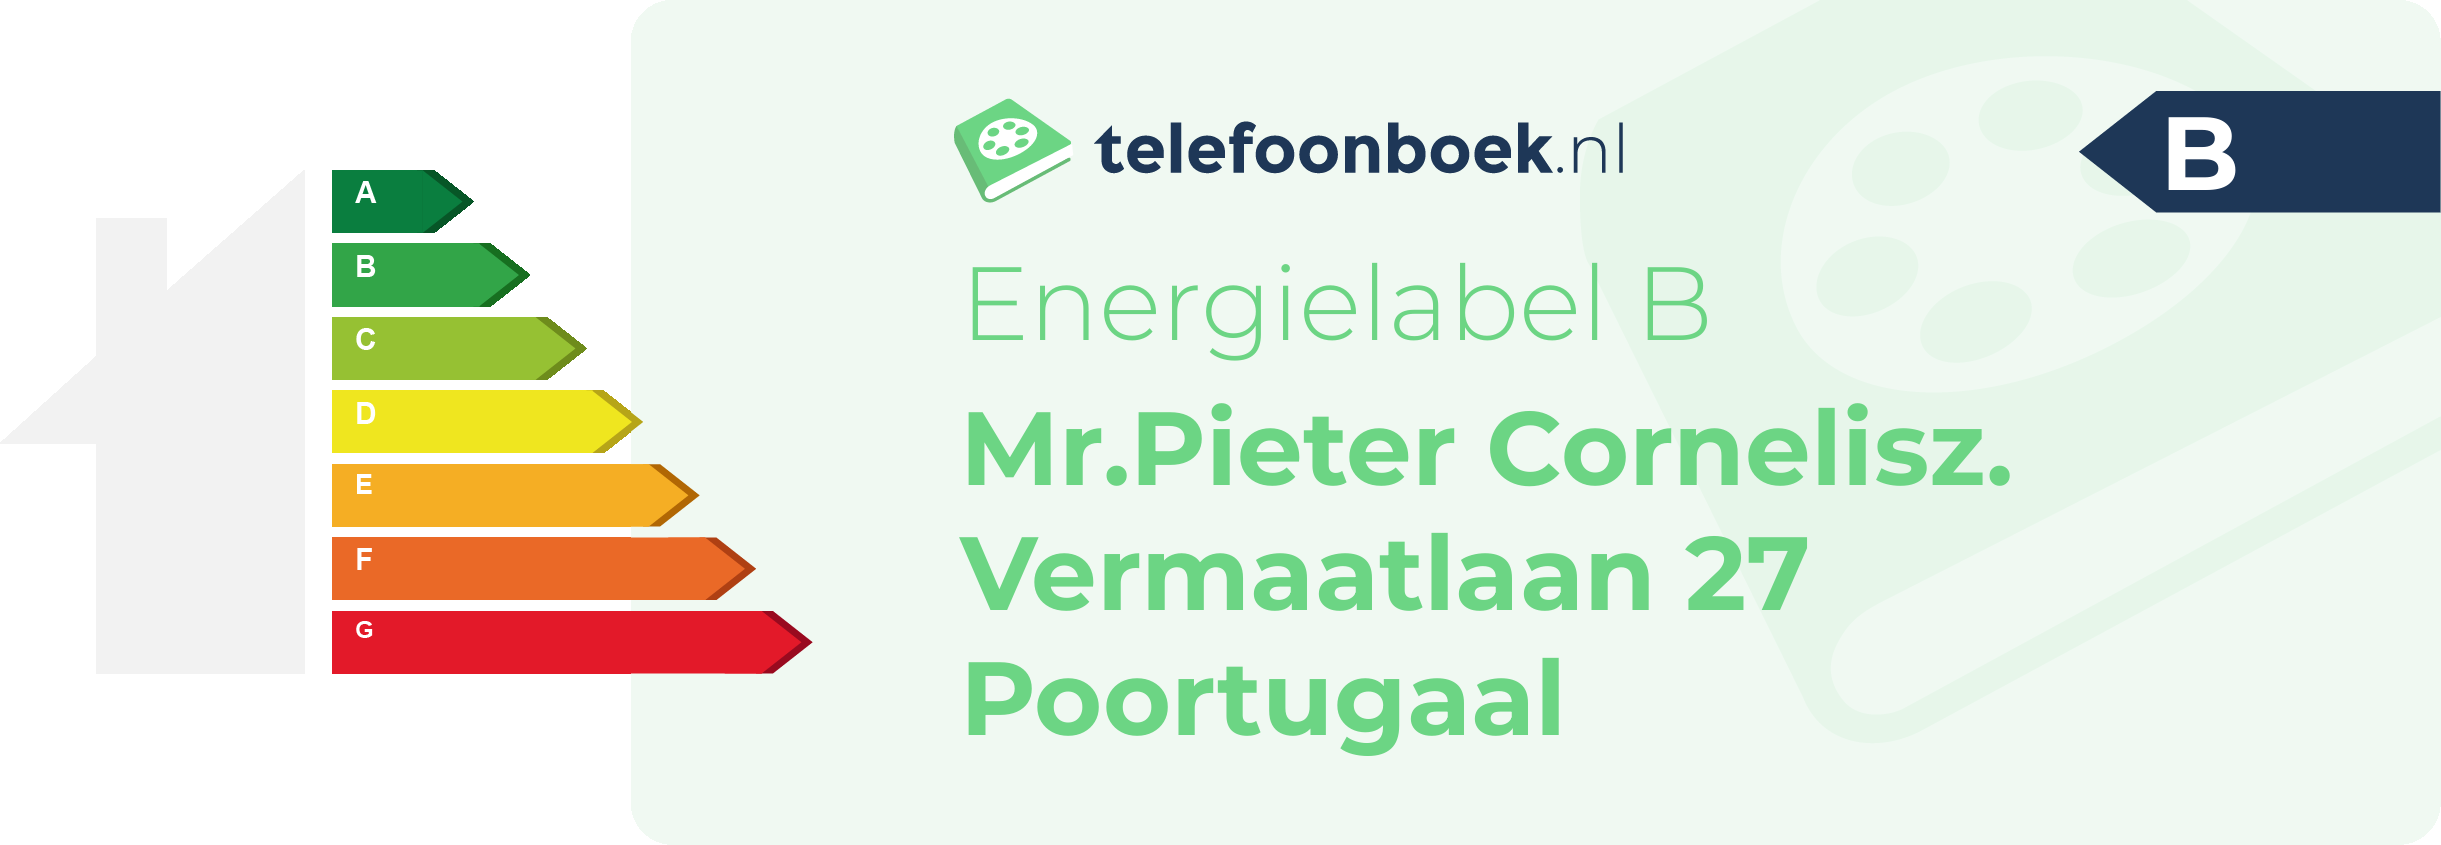 Energielabel Mr.Pieter Cornelisz. Vermaatlaan 27 Poortugaal